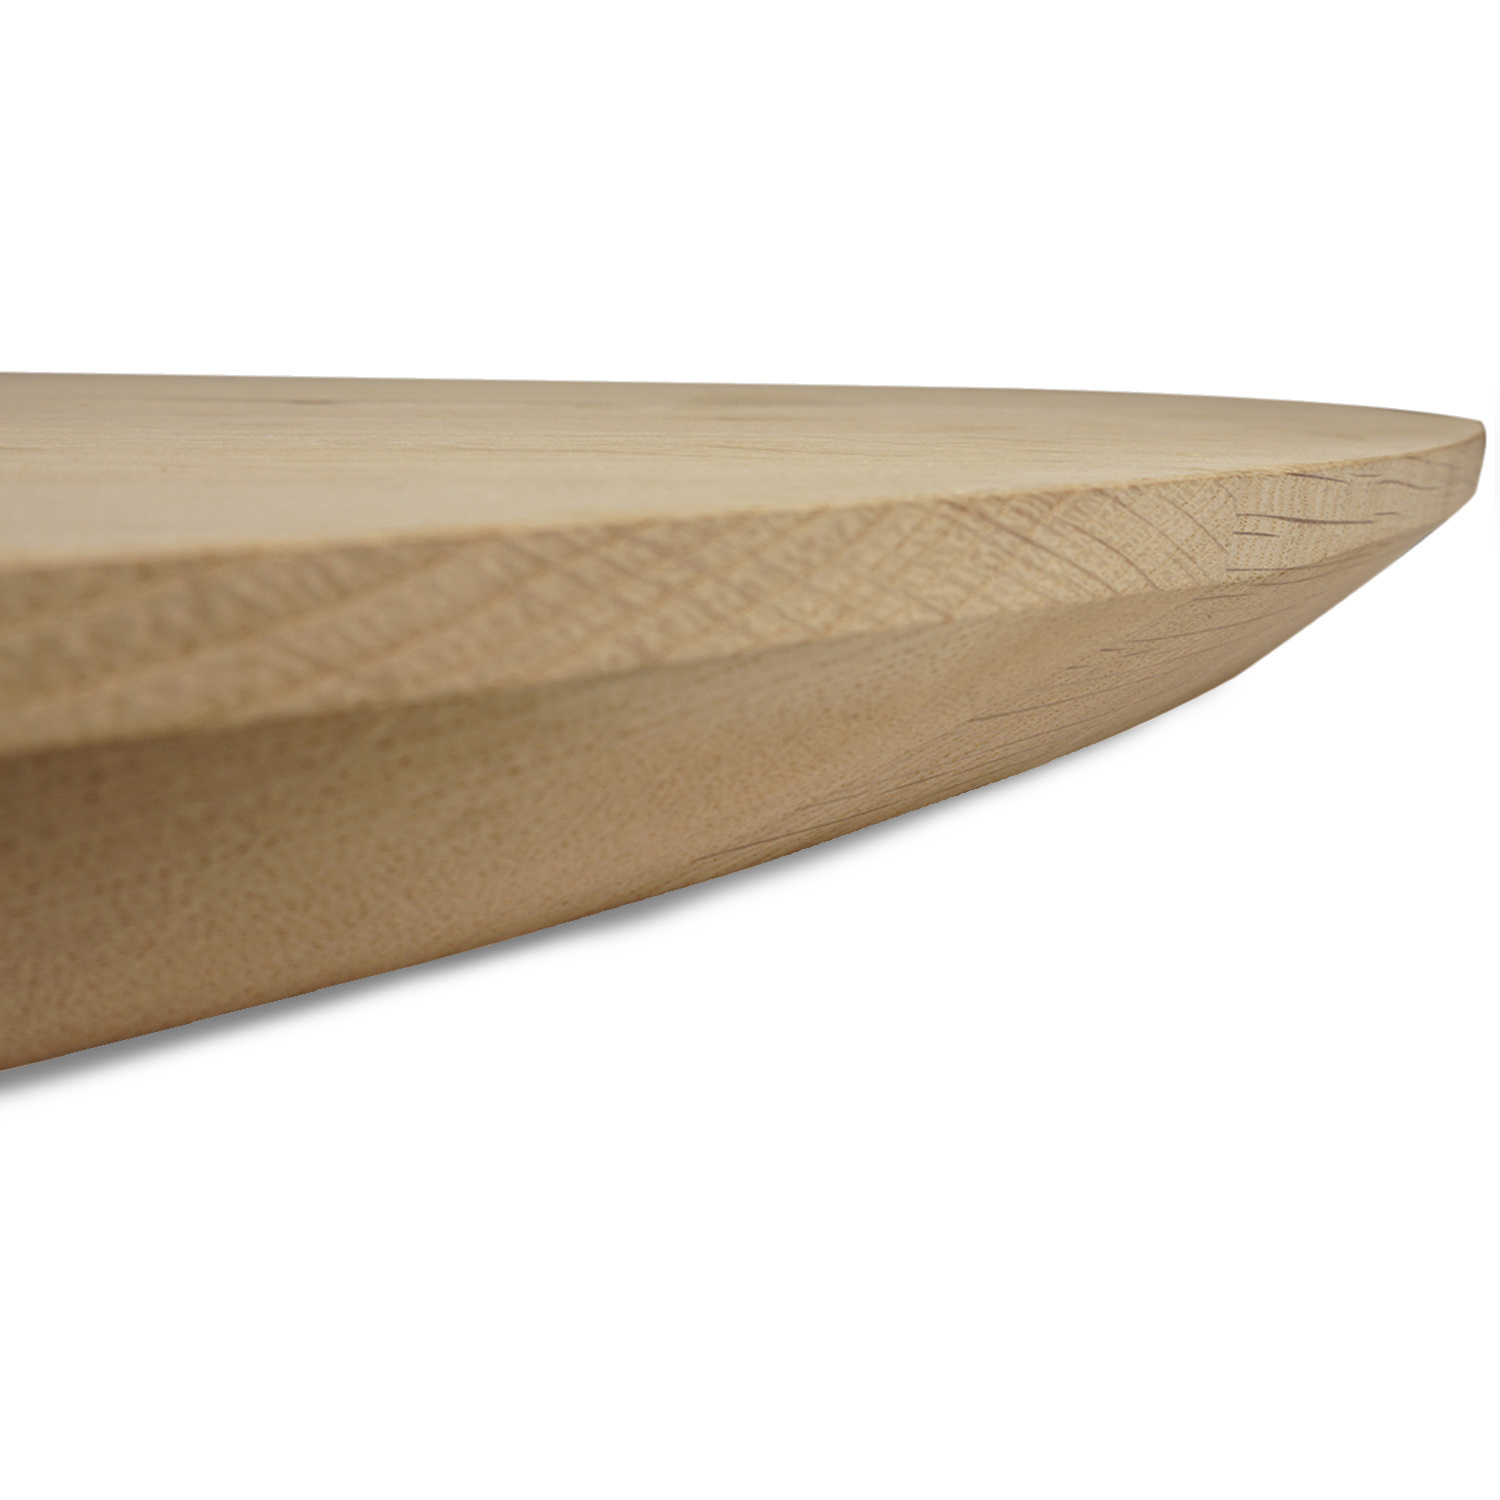  Tischplatte Eiche oval - 2,5 cm dick - Eichenholz Rustikal - Ellipse Eiche Tischplatte massiv - HF 8-12%